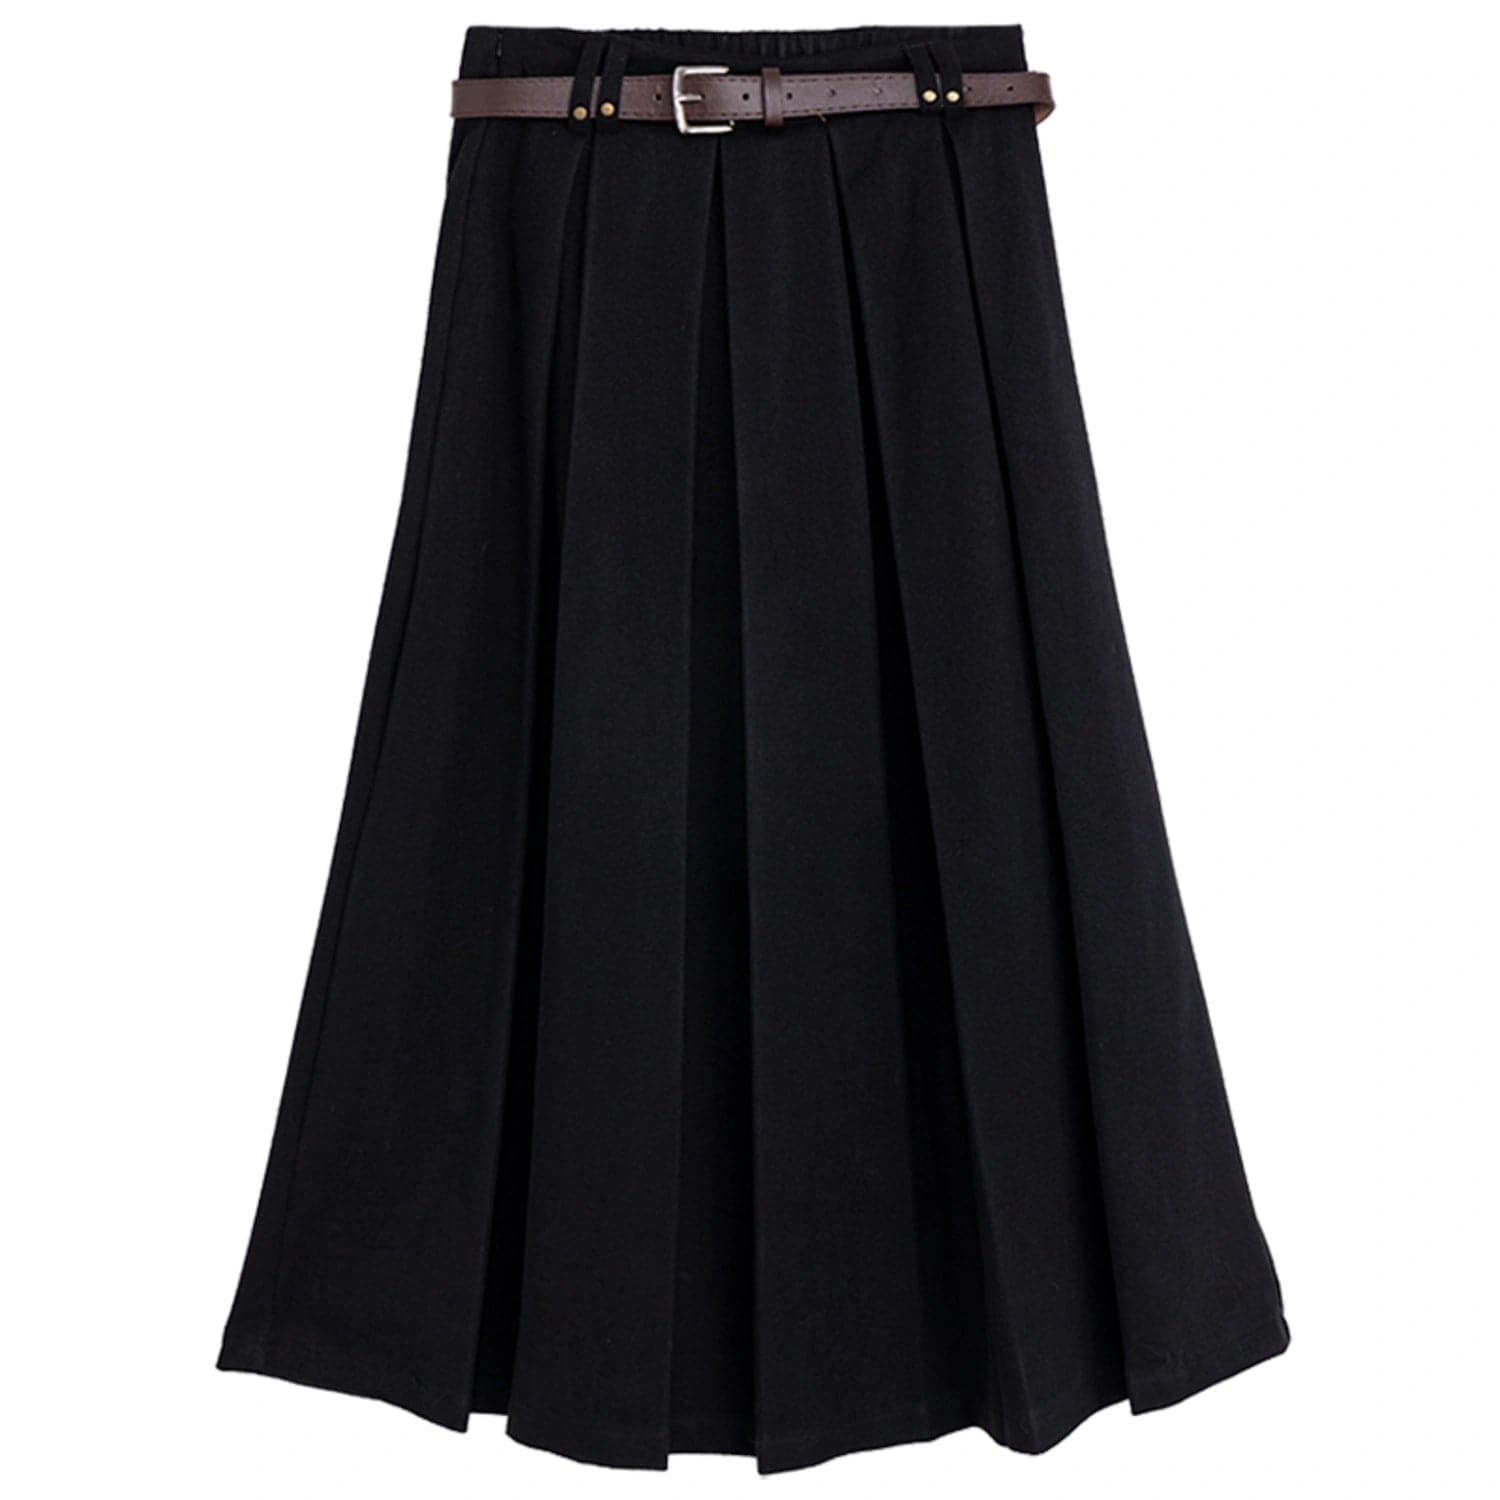 Elegant Pleated Midi Skirt with Buckled Belt